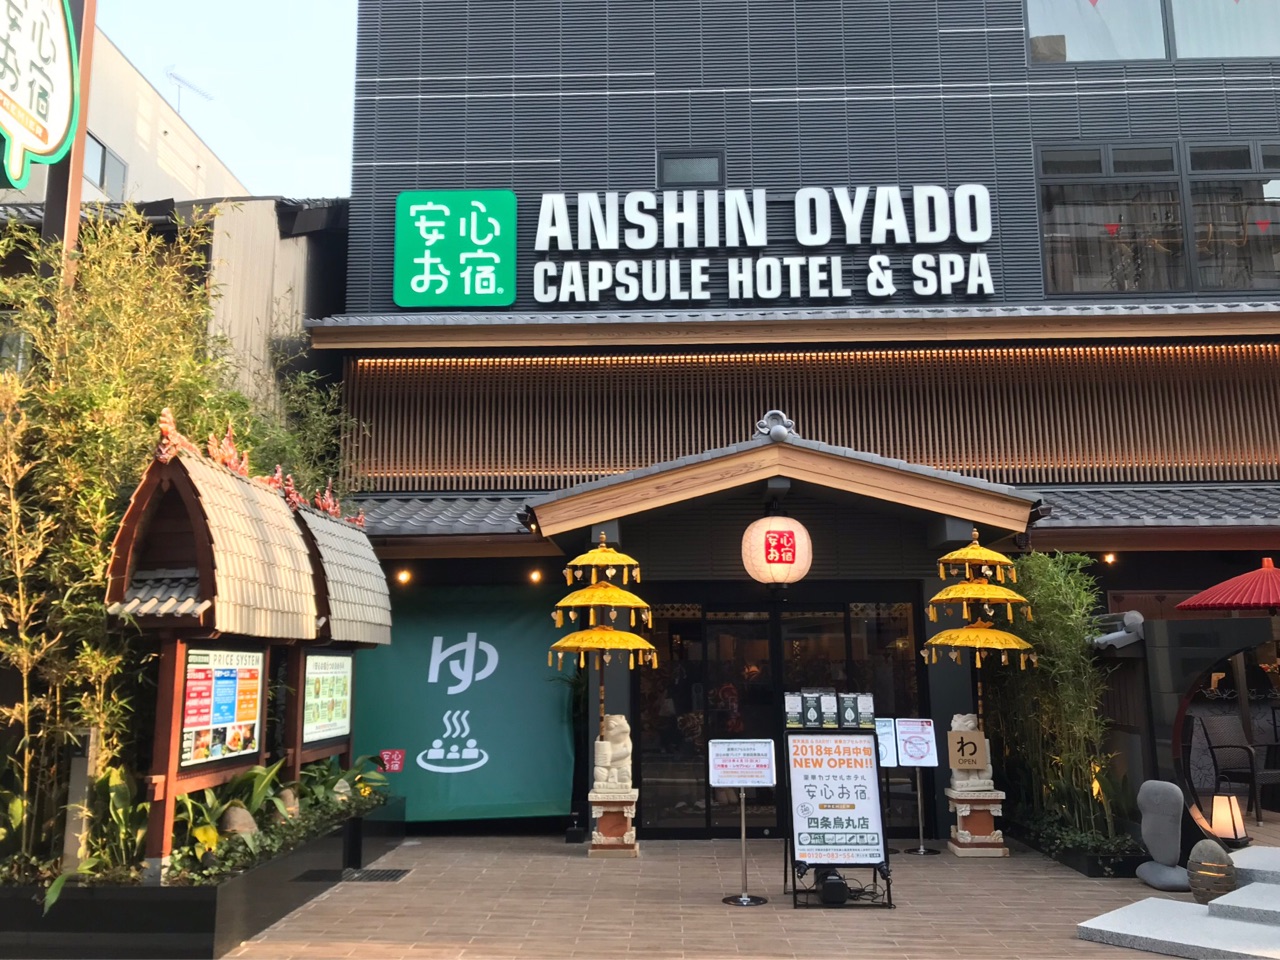 カプセルホテル日本一 豪華カプセルホテル 安心お宿が京都に どるふぃんの気ままに食べ歩き